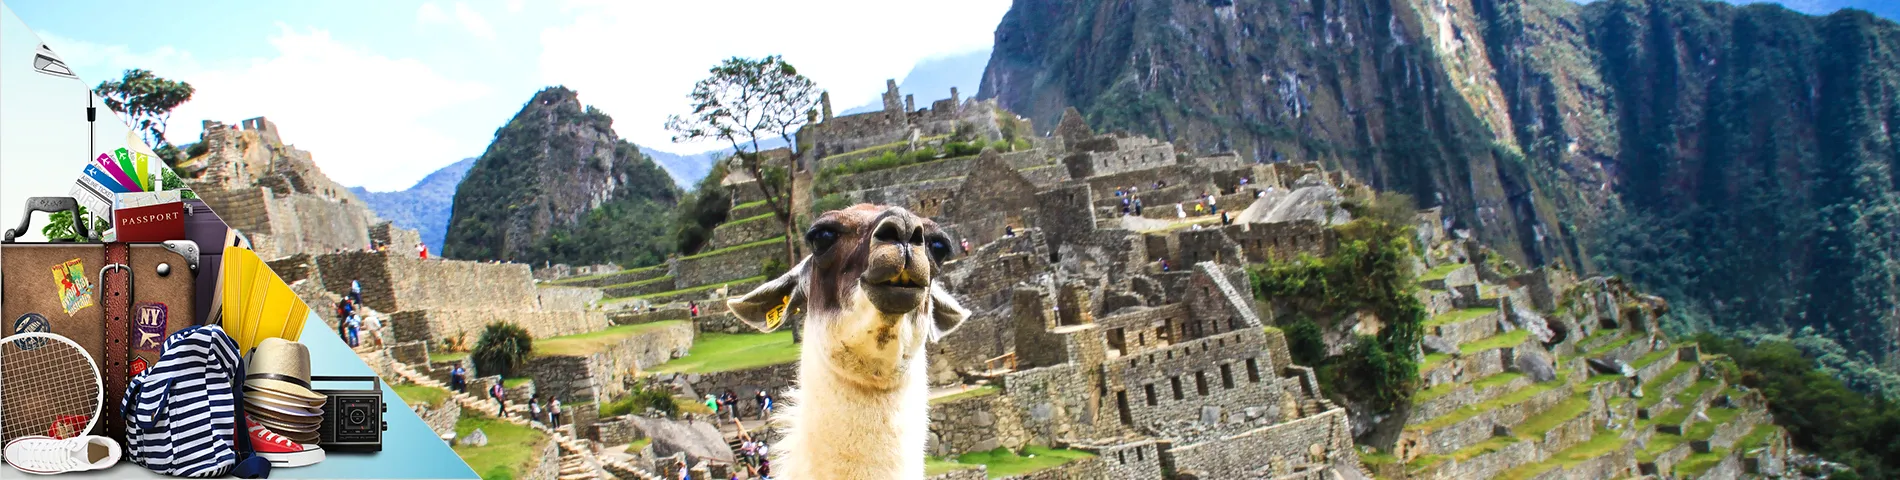 秘鲁 - 西班牙语旅游